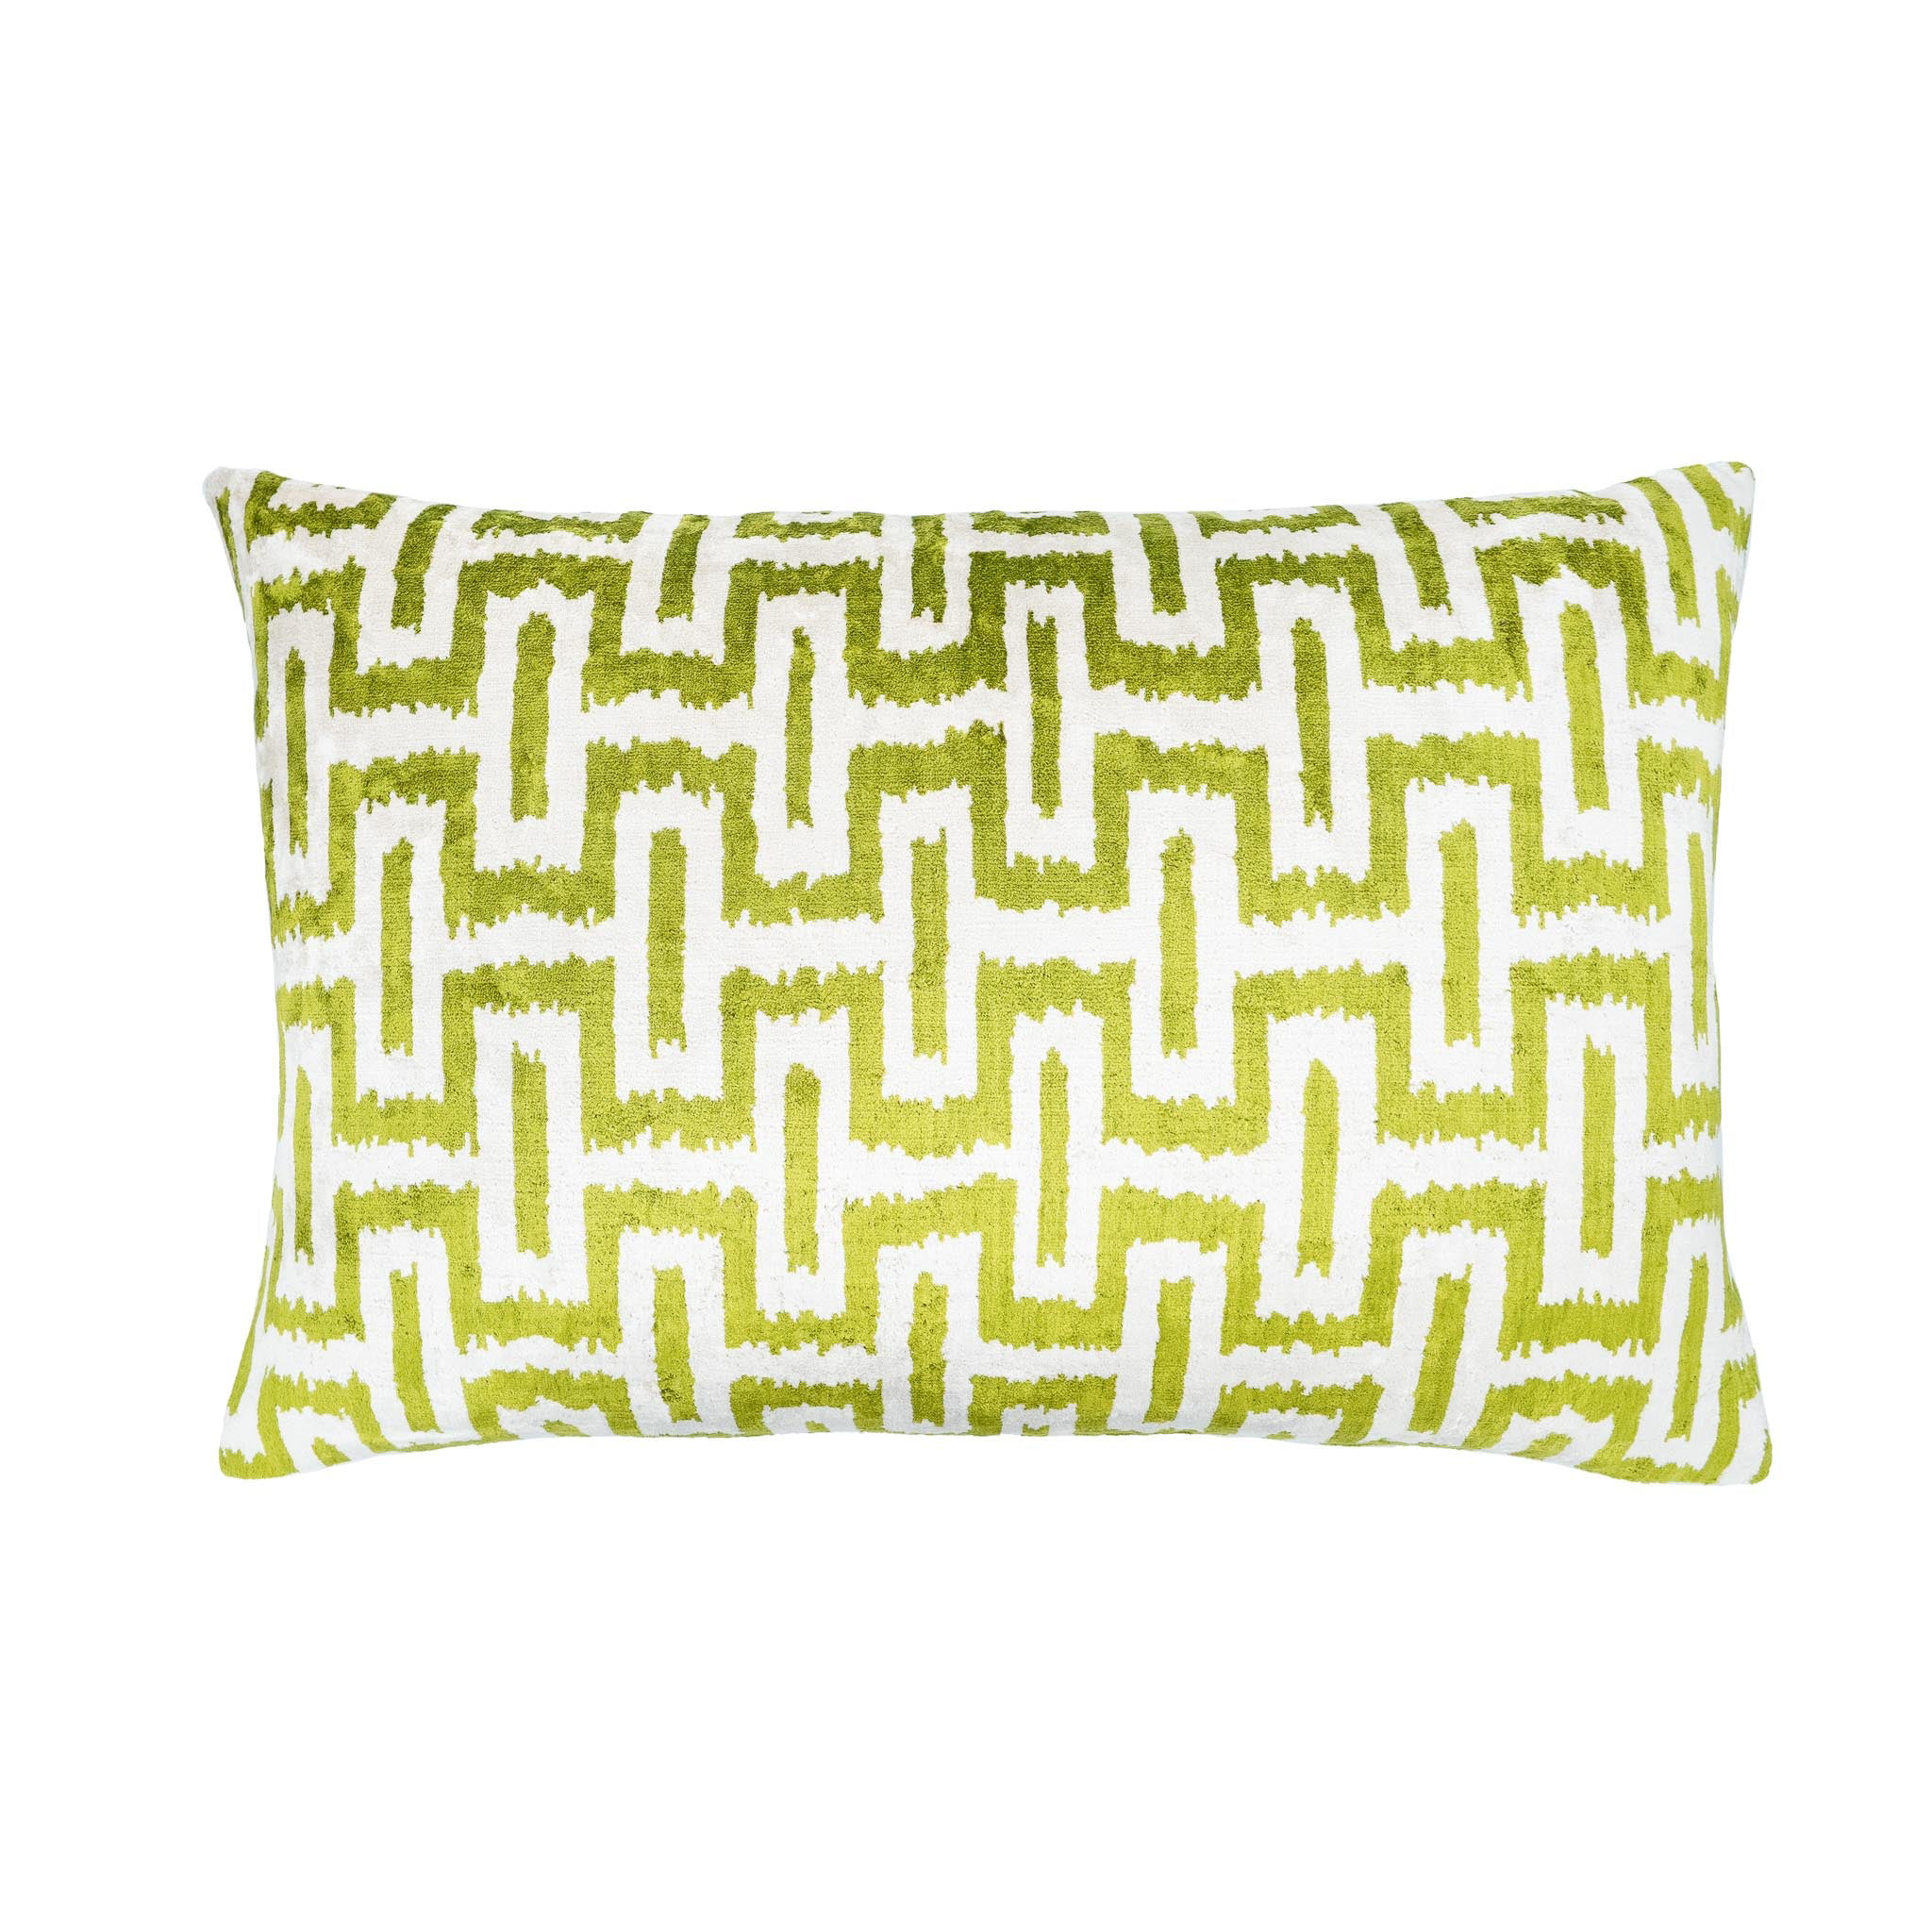 Velvet Ikat Pillow Cushion Cover Green Black Pillow Case 16"x24" 40x60 cm 